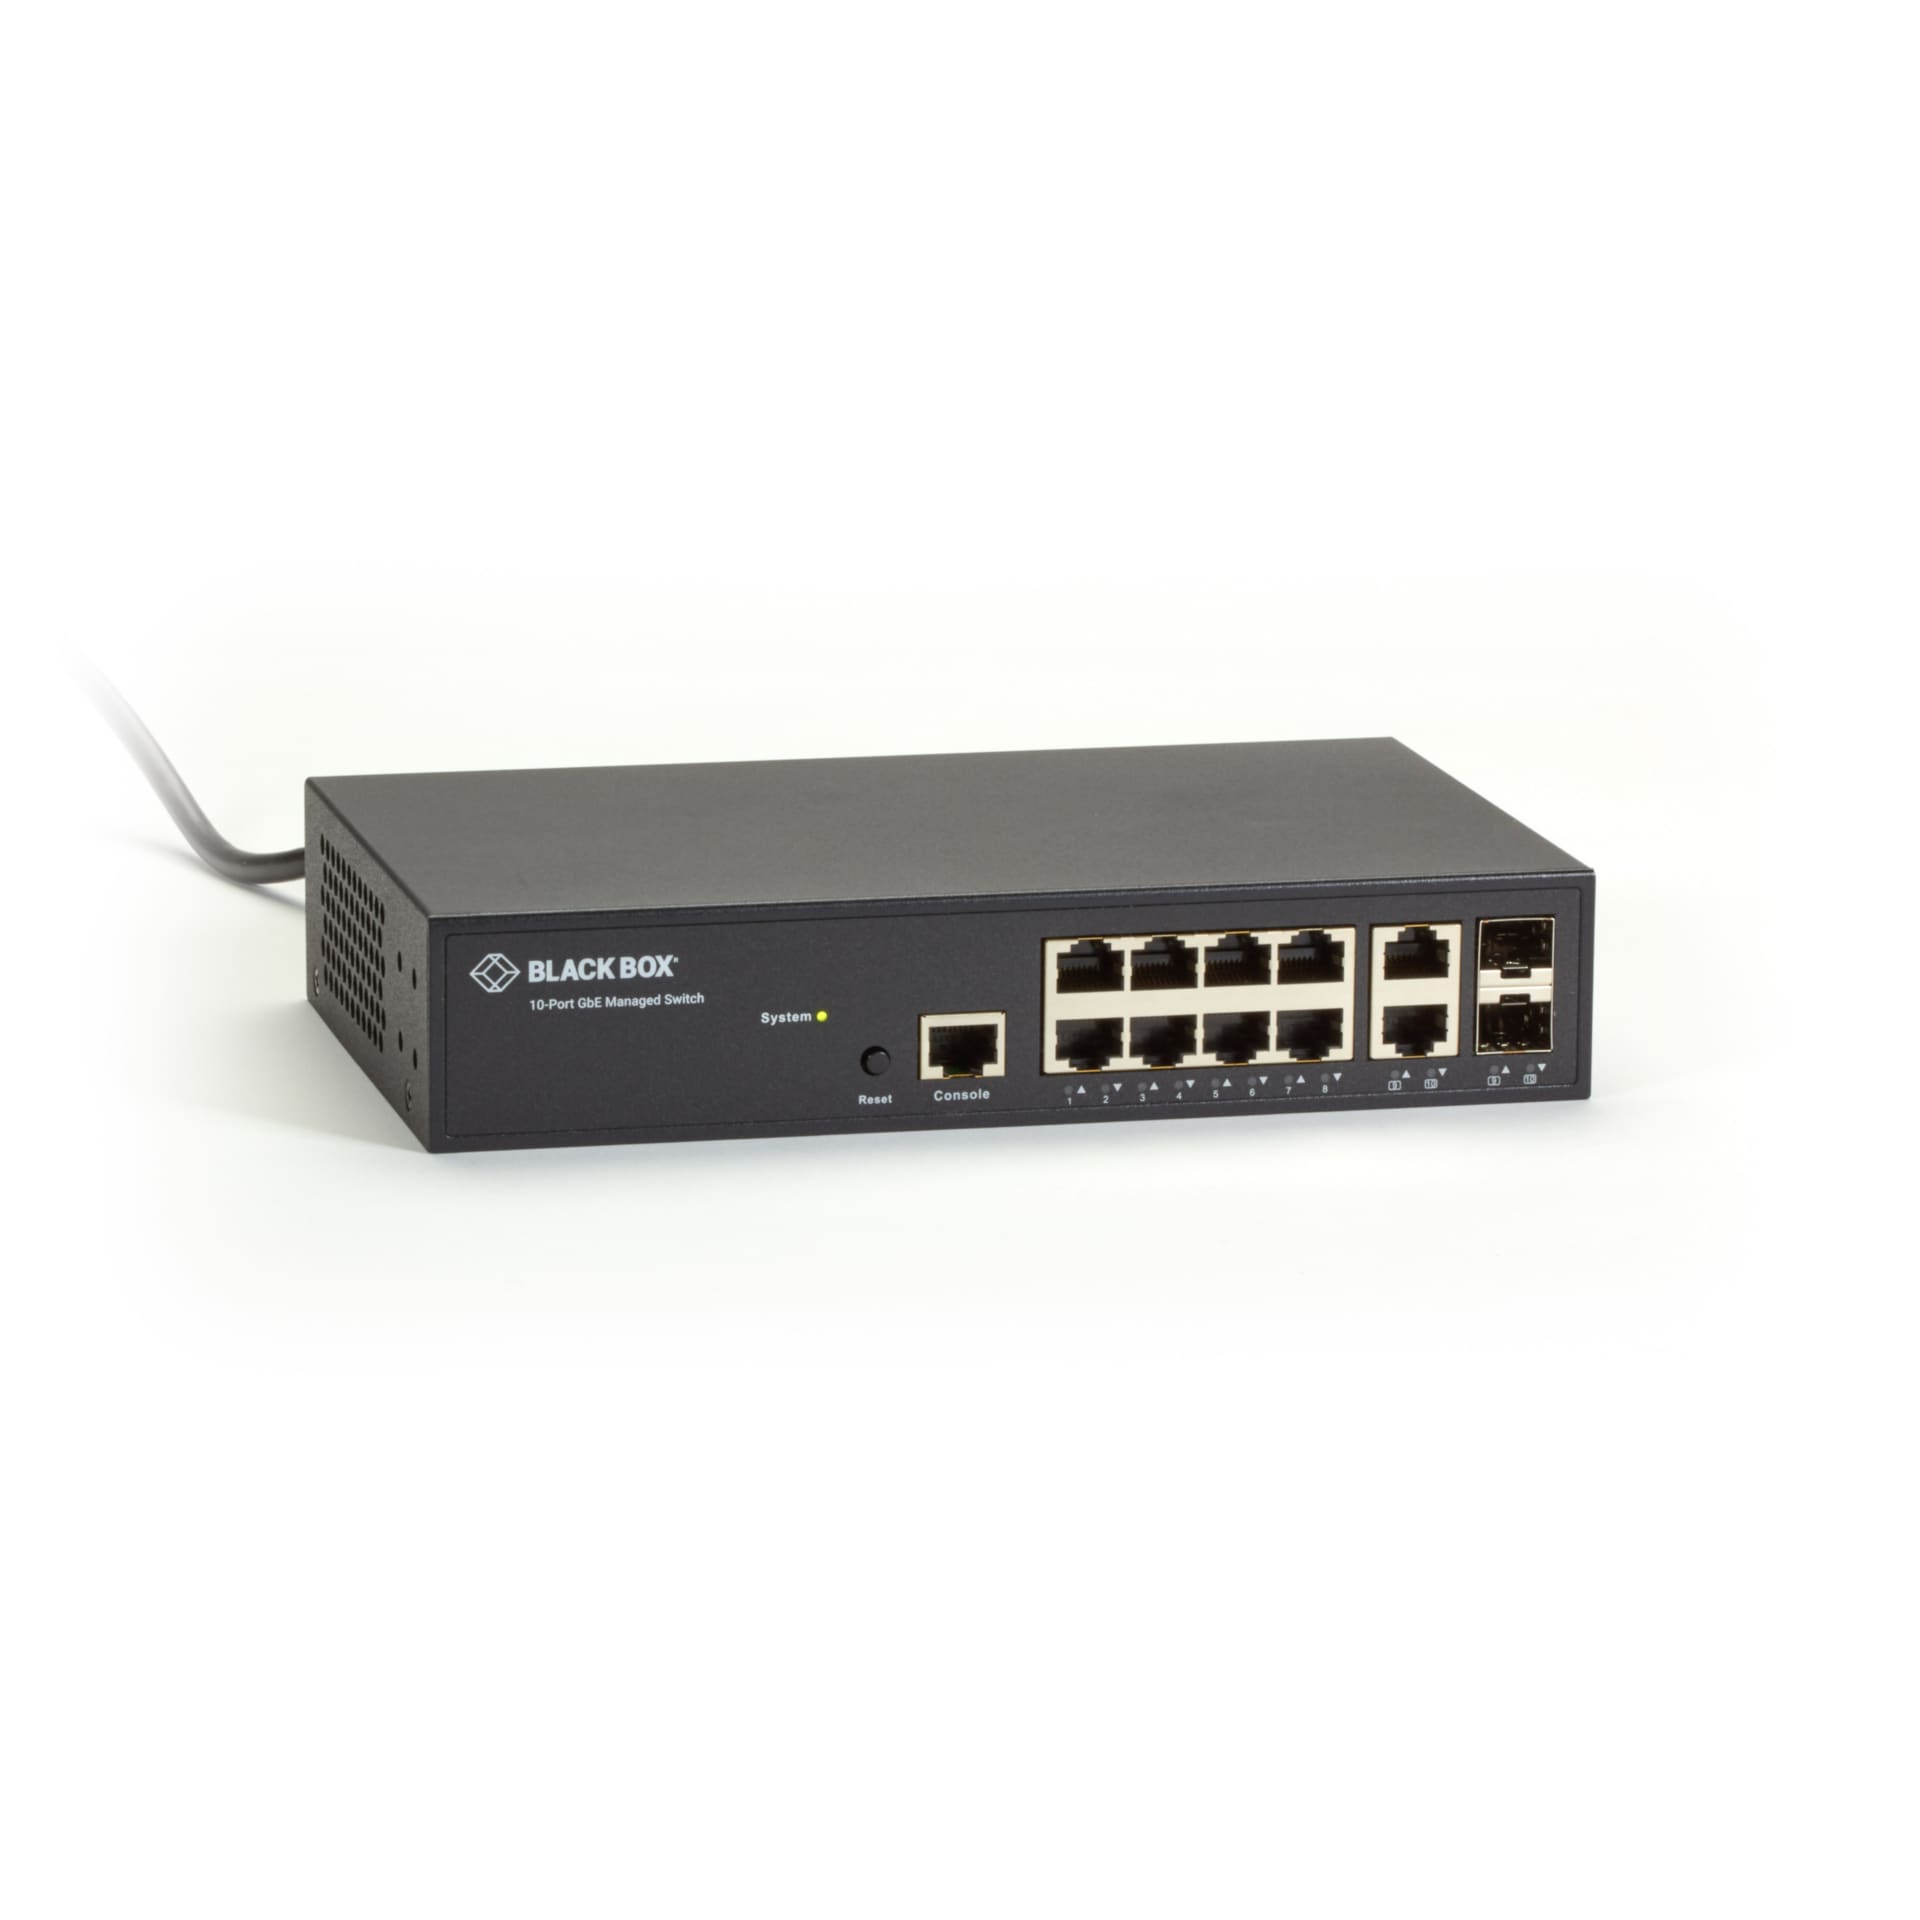 Black Box Gigabit Ethernet Managed Switch - switch - 10 ports - managed - r